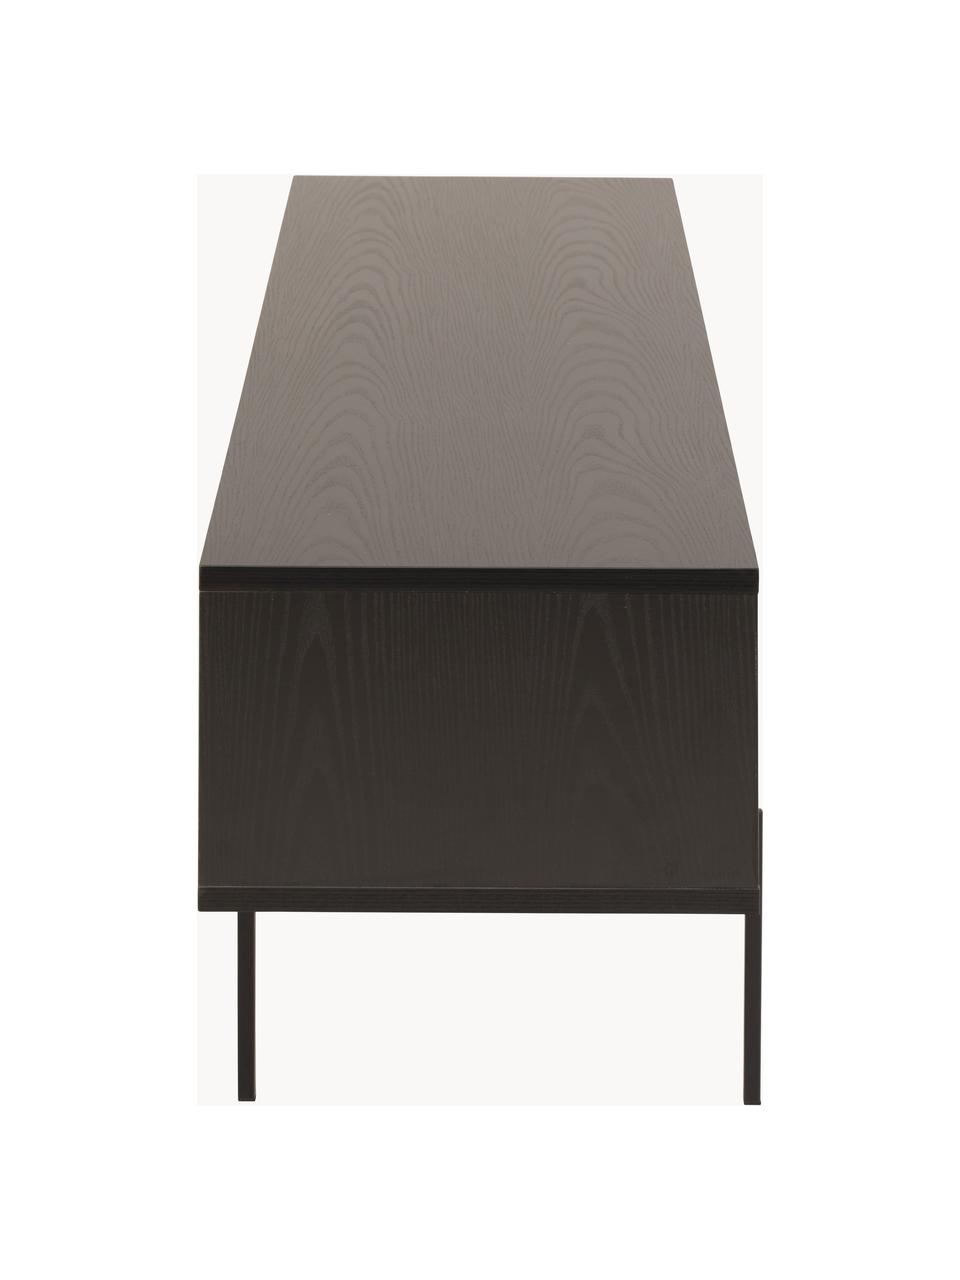 TV stolek Angus, Dřevo, lakováno černou barvou, Š 180 cm, V 44 cm